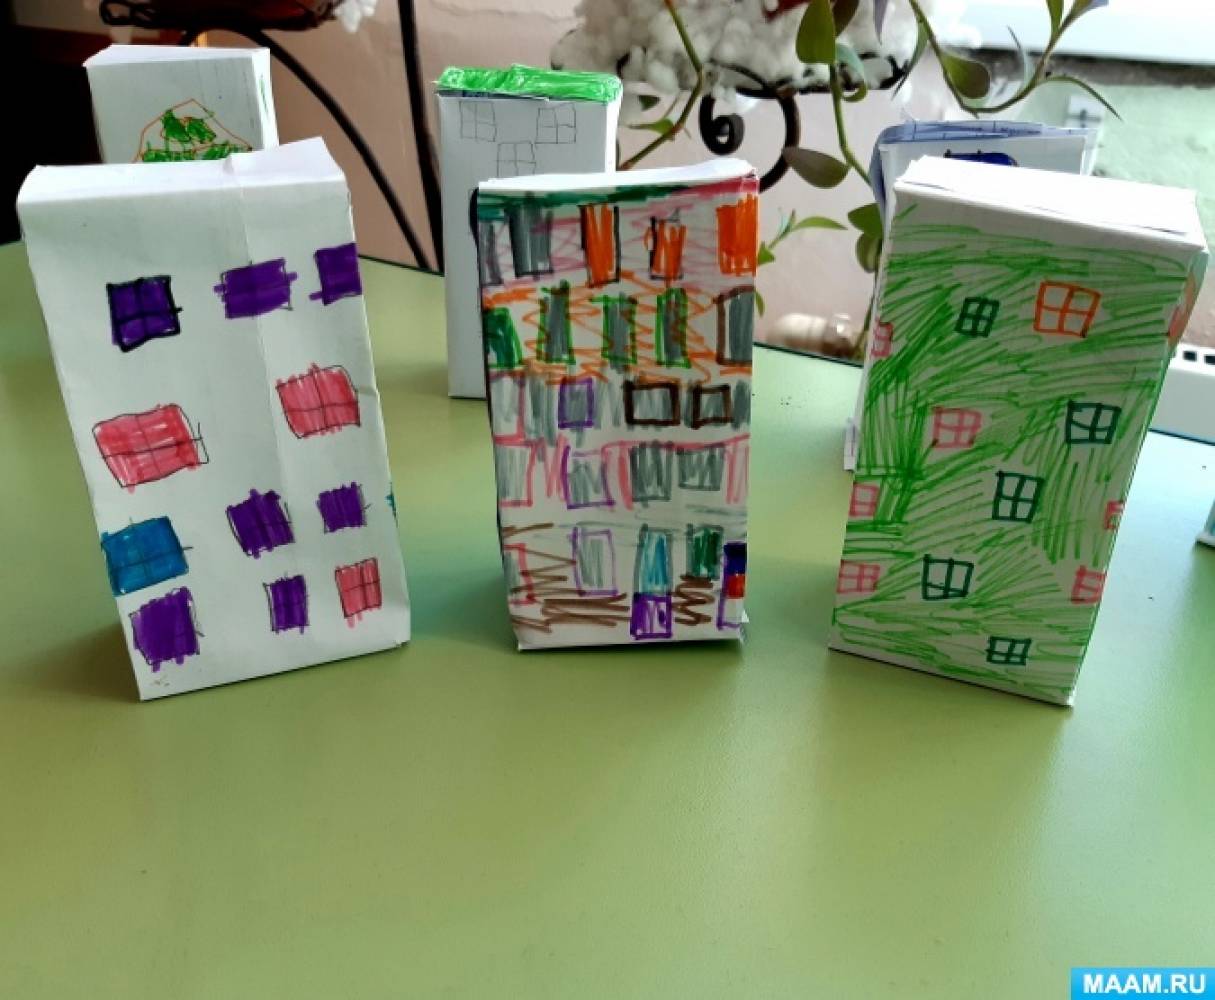 Конспект ОД по конструированию из бумаги «Многоэтажный дом» с детьми старшего дошкольного возраста